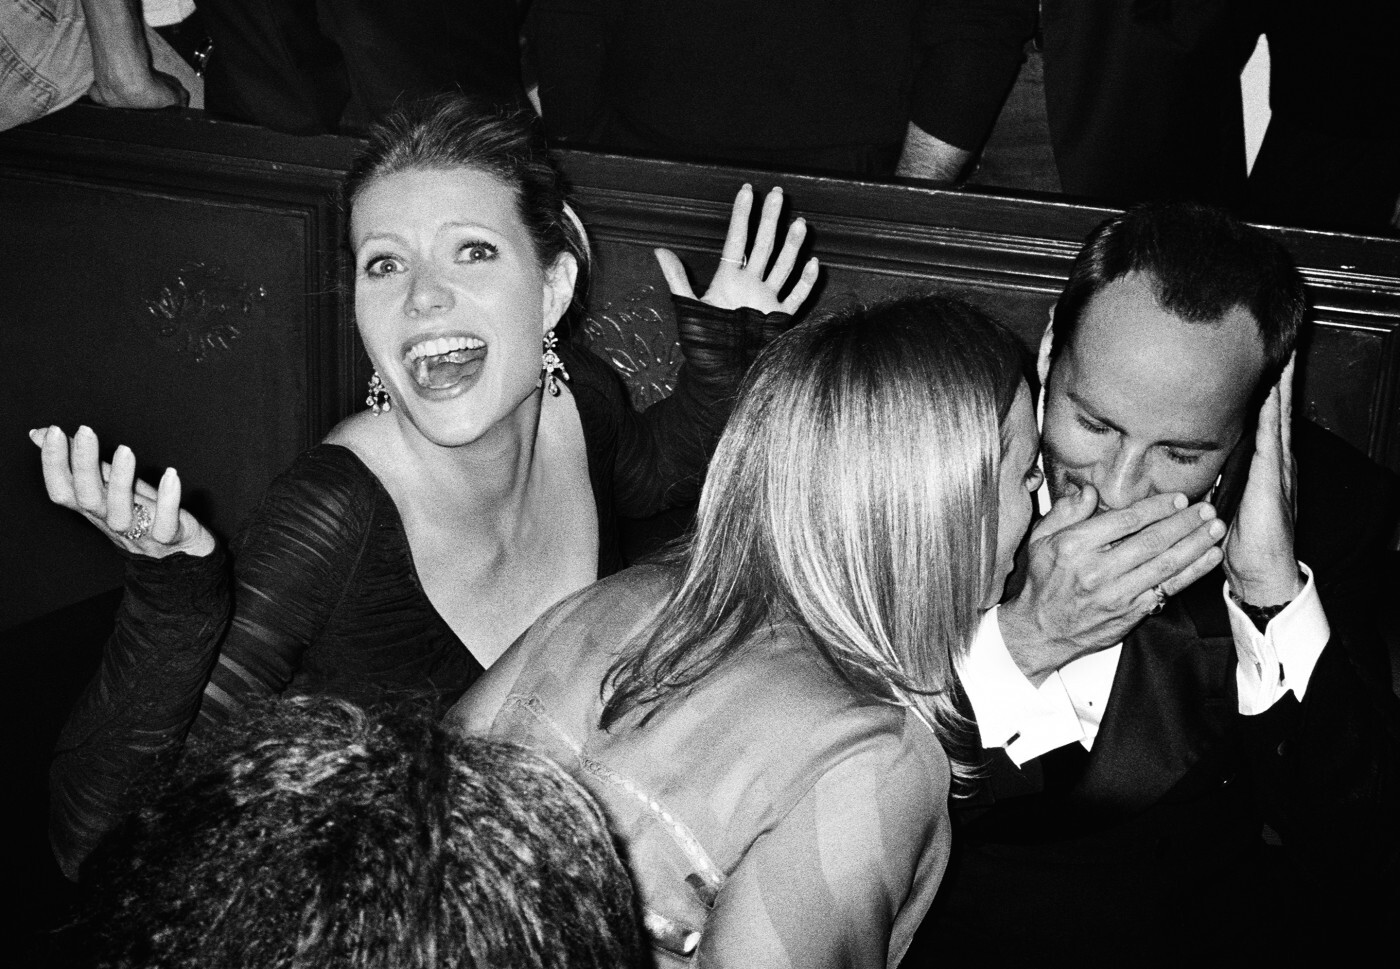 Гвинет Пэлтроу, Стелла Маккартни и Том Форд. Милан, 2002. Фотограф Марио Тестино